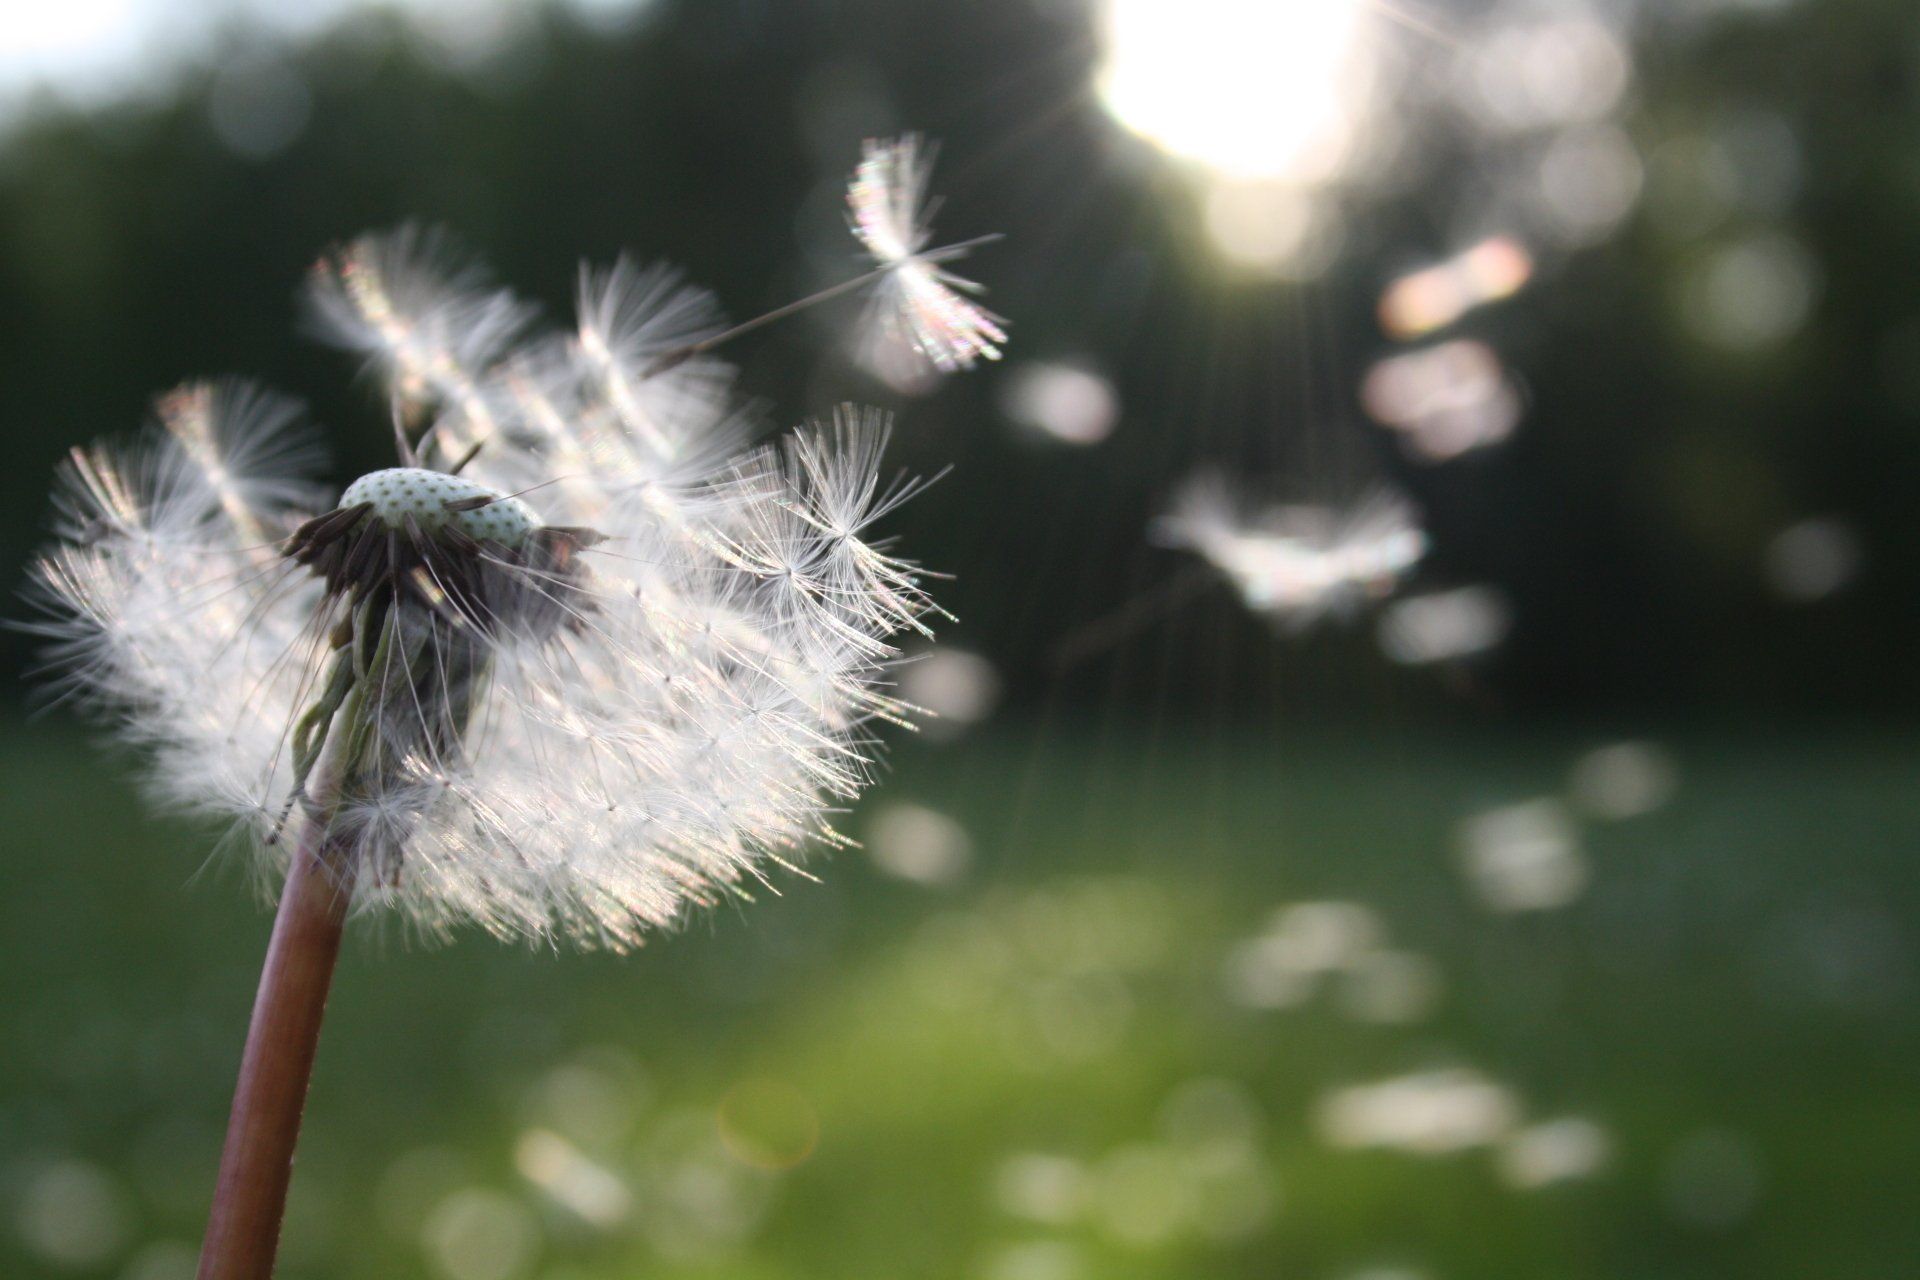 A dandelion is blowing in the wind in a field.